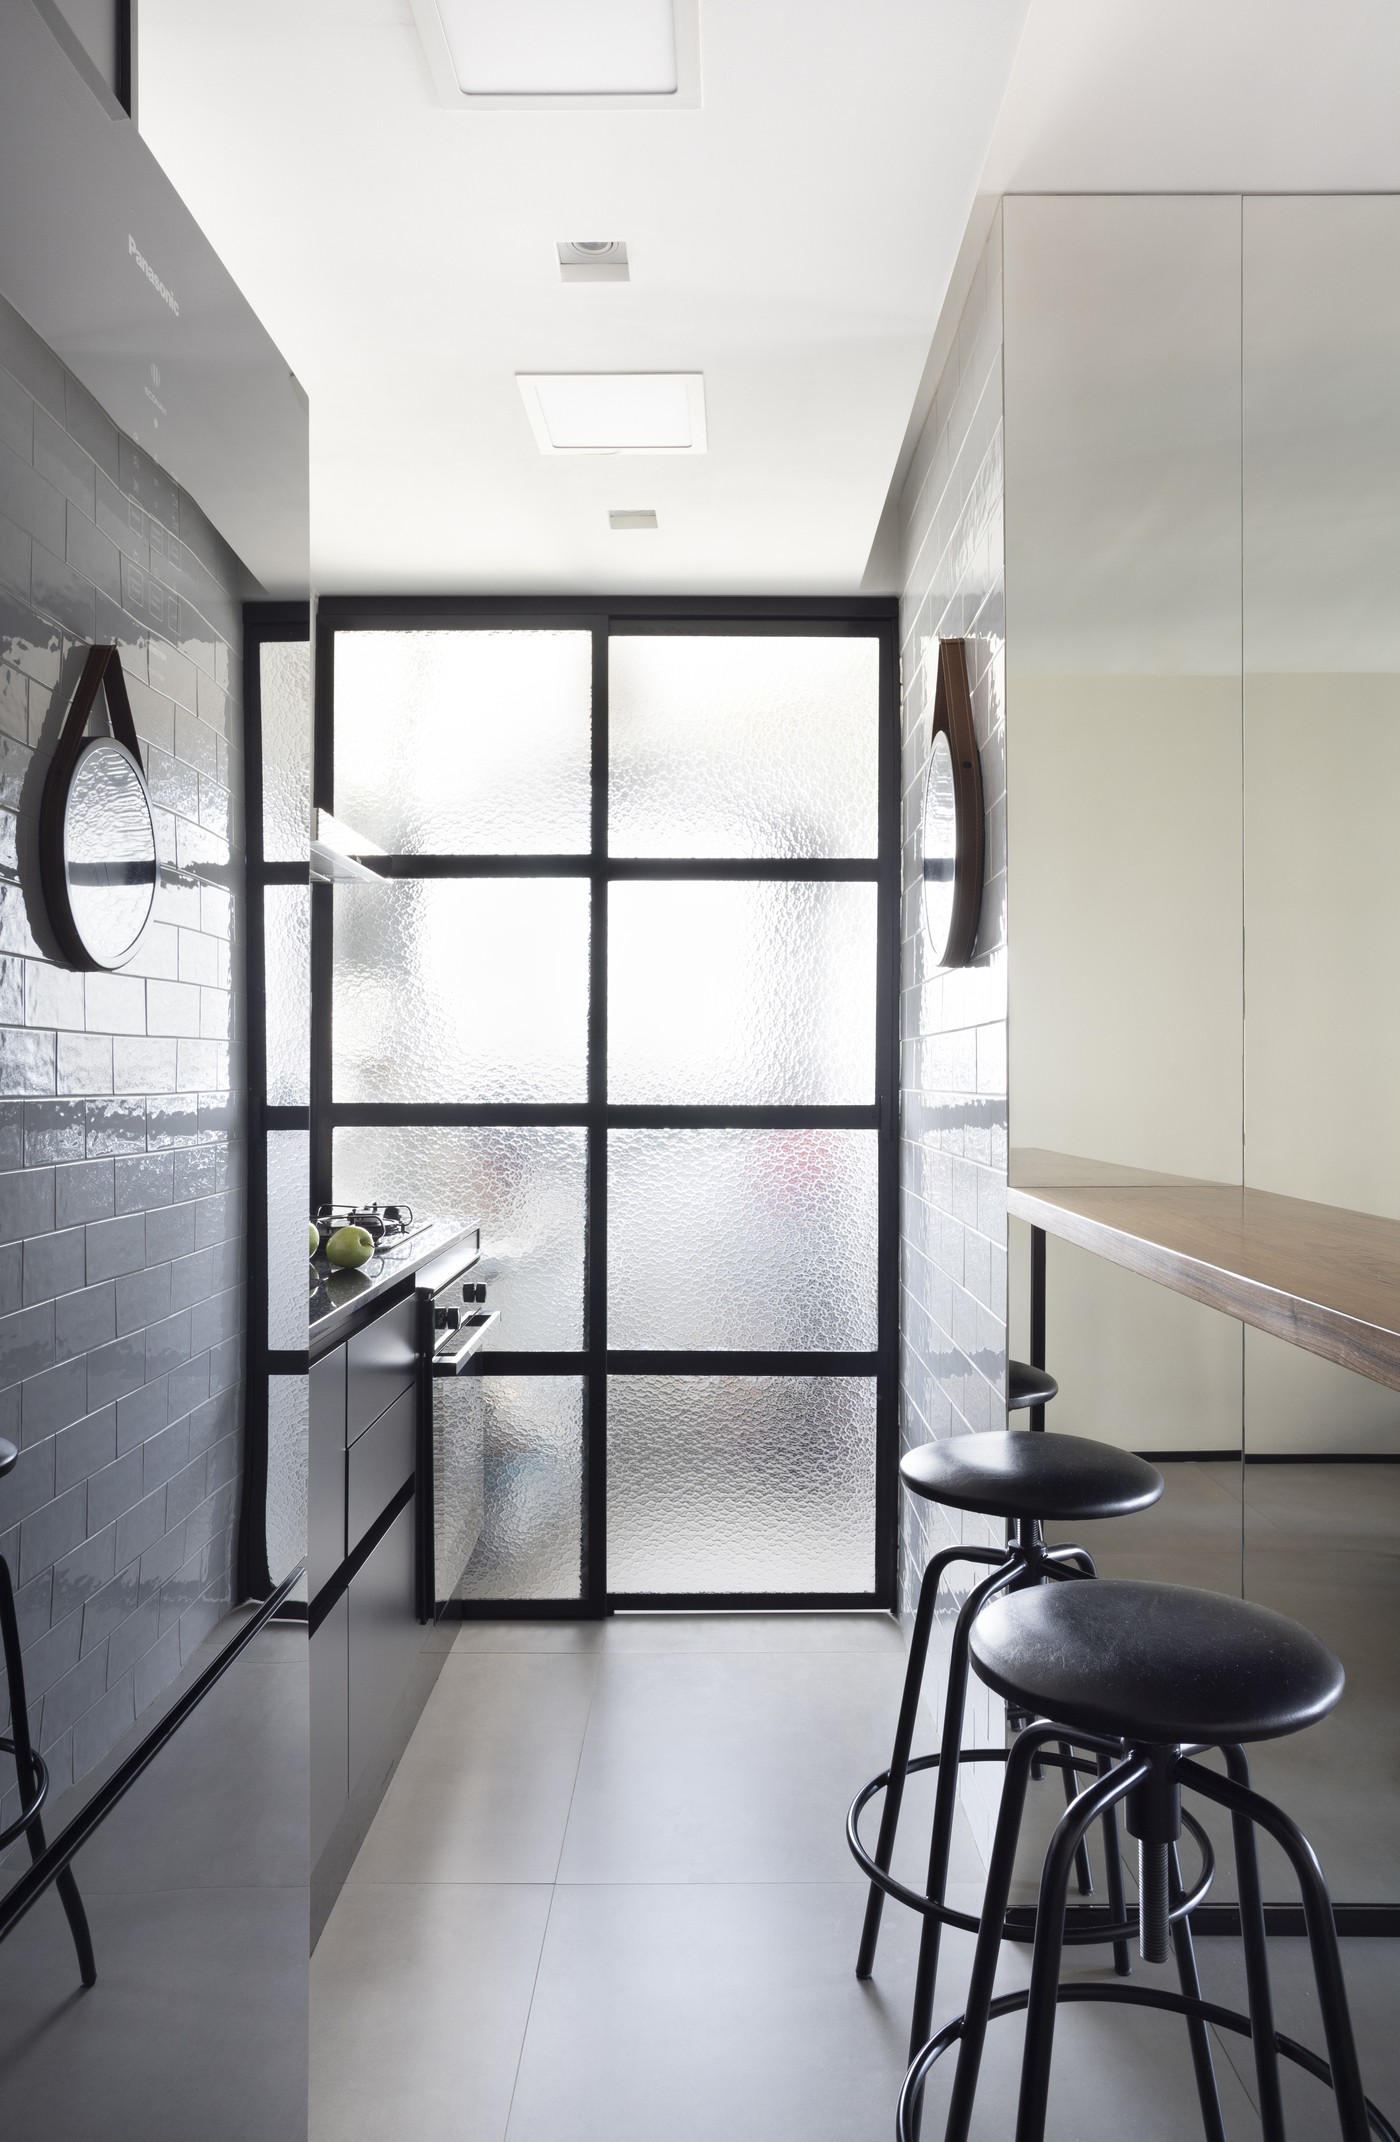 Décor do dia: cozinha com armários pretos e porta de serralheria (Foto: Carolina Mossin)